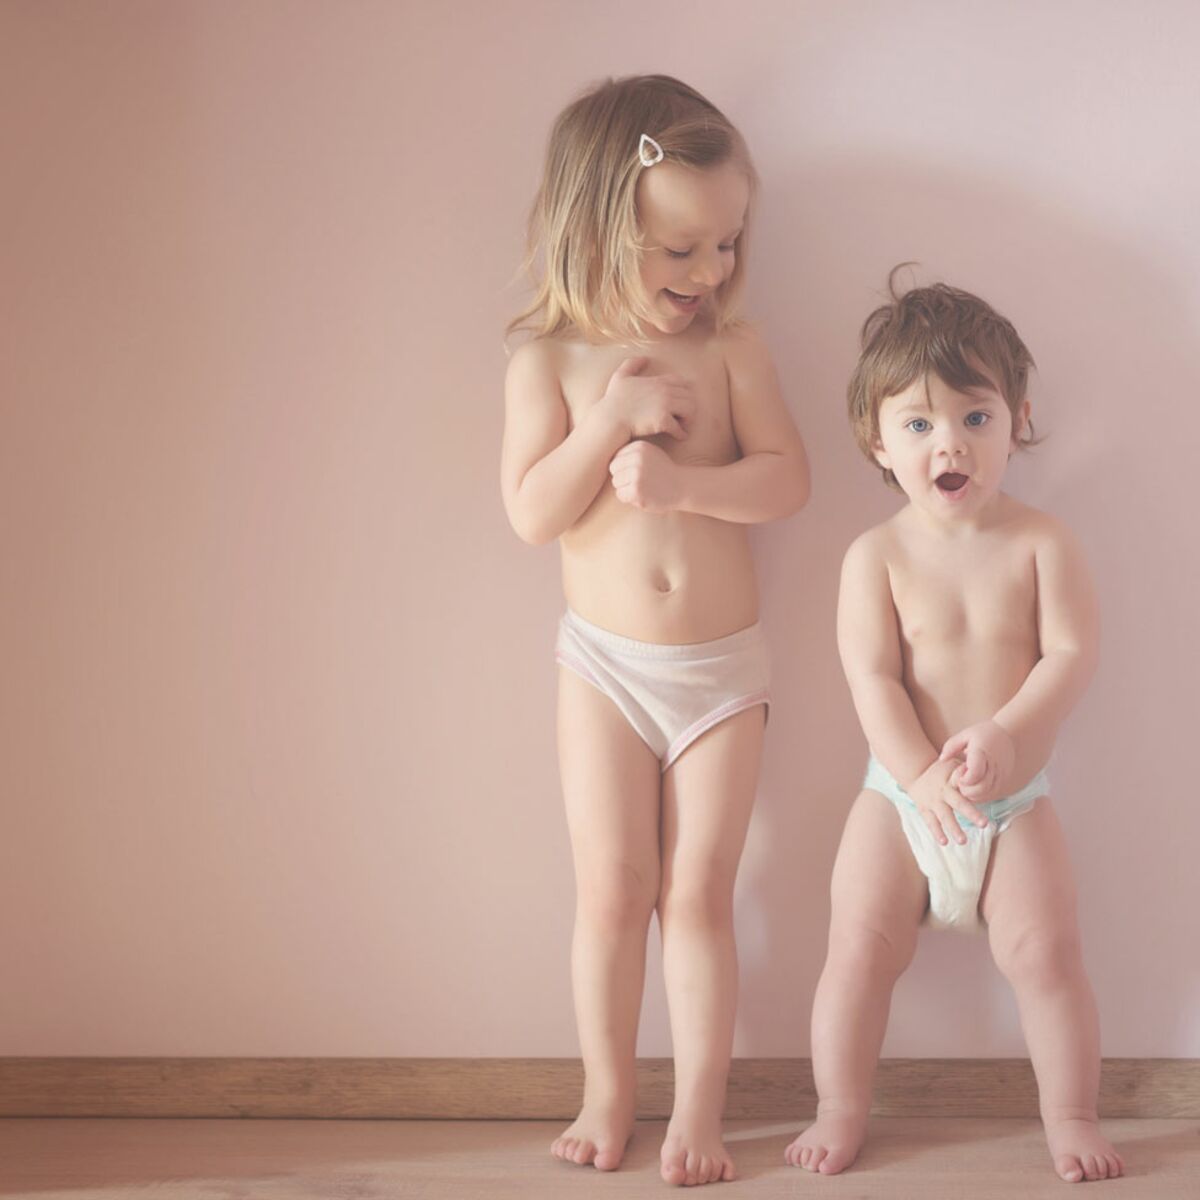 Infection Urinaire Les Enfants Aussi Sont Concernes Femme Actuelle Le Mag